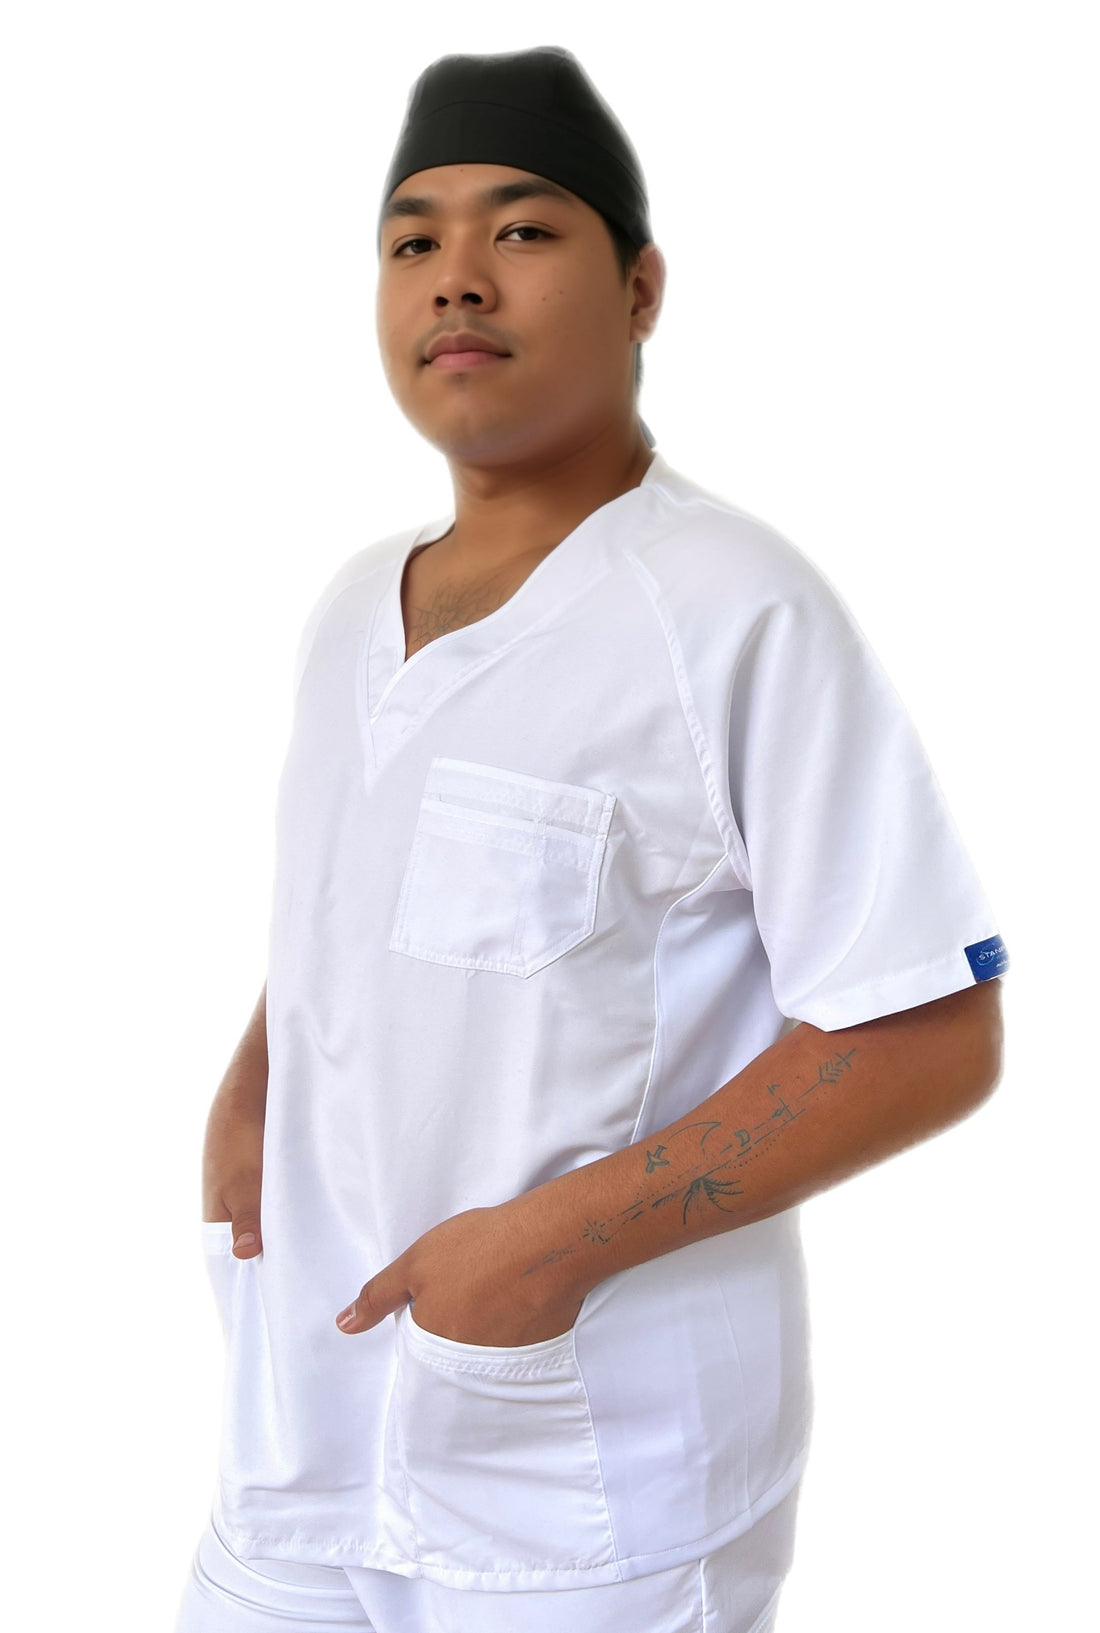 filipina guatemala blanca para hombre uniformes stanford, envio a toda la republica, mayoreo y menudeo